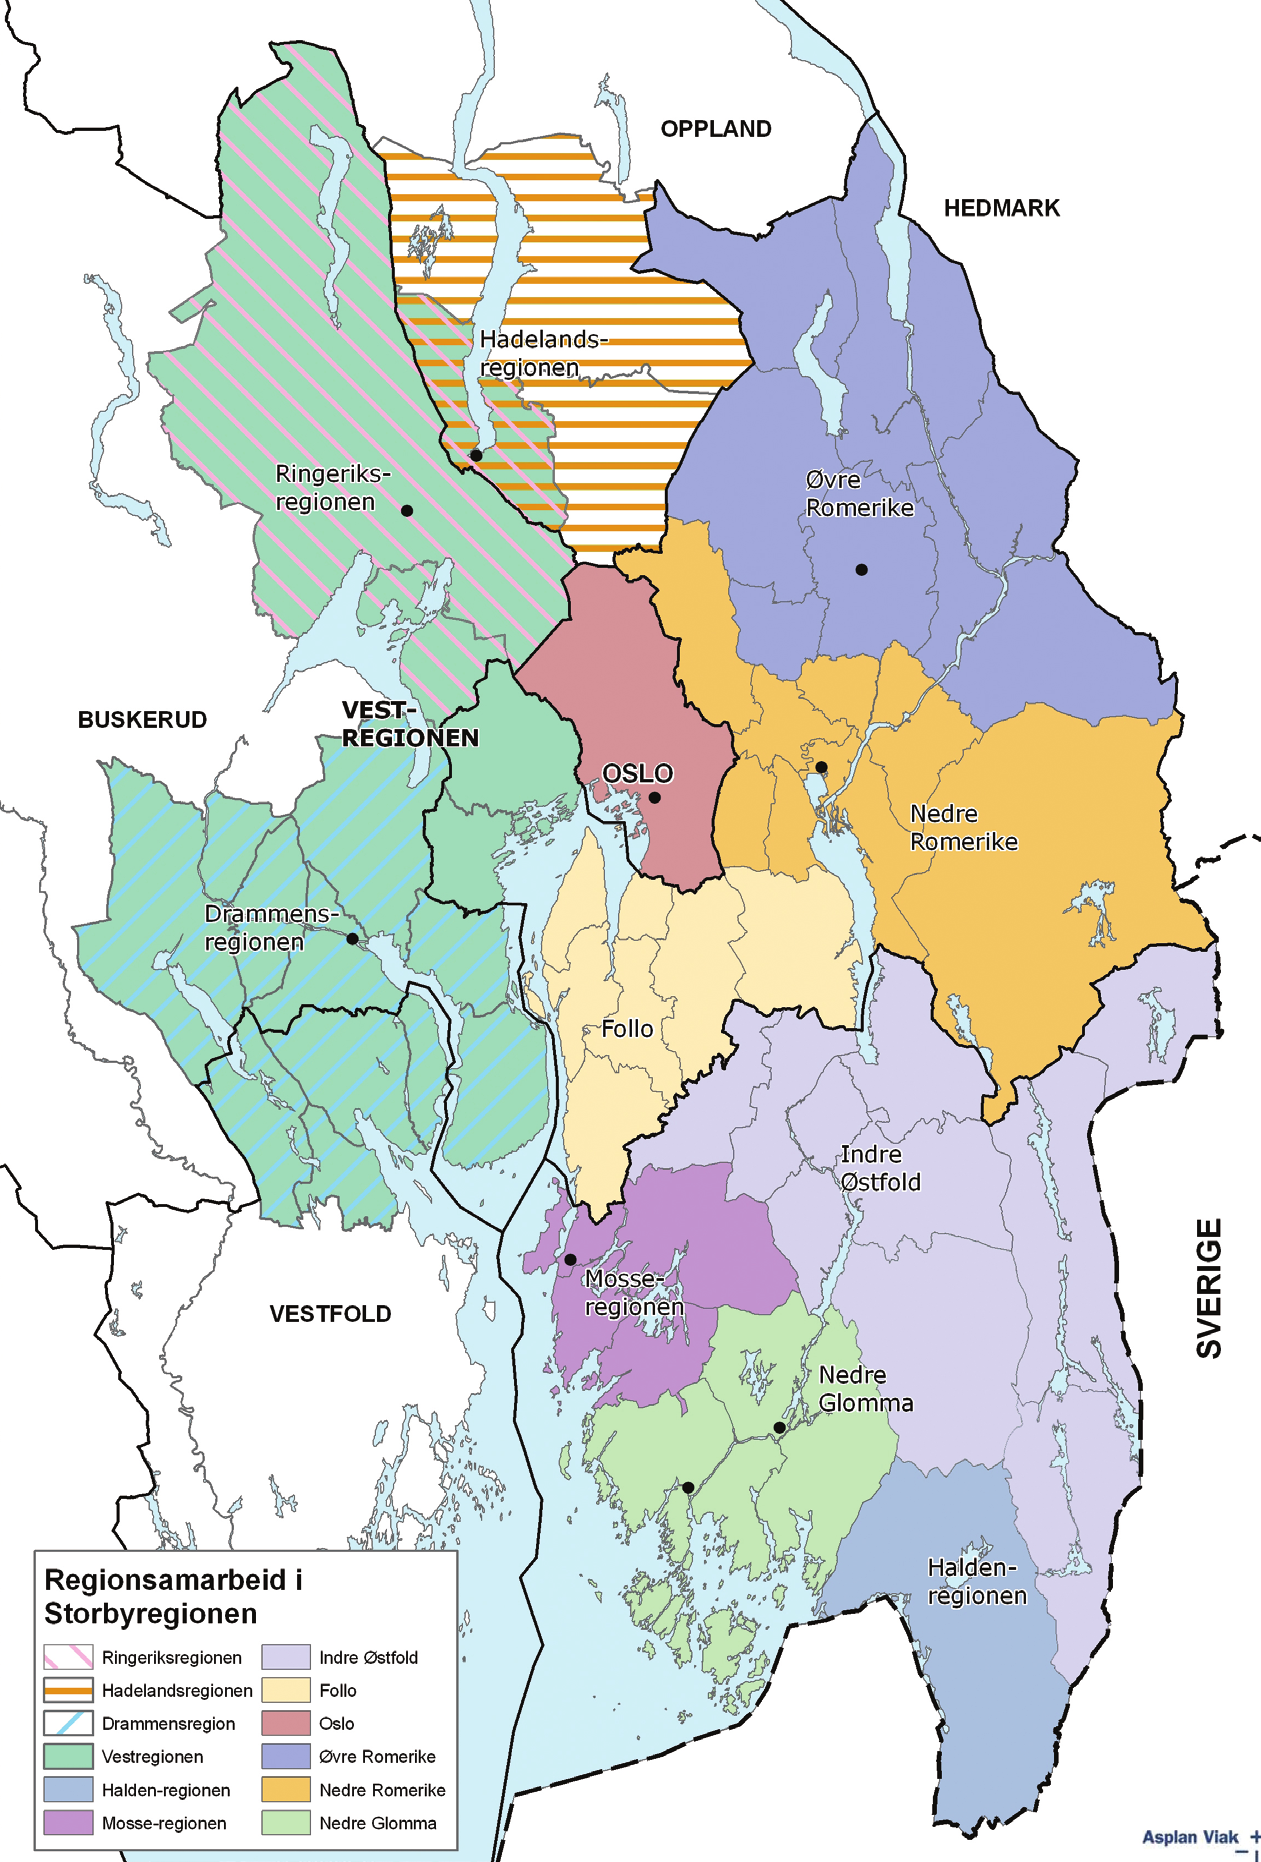 Innledning Osloregionen er en strategisk samarbeidsallianse som omfatter Oslo kommune, alle kommunene Akershus og Østfold, de nærmeste kommunene til Oslo i Oppland, Buskerud og Vestfold samt Akershus